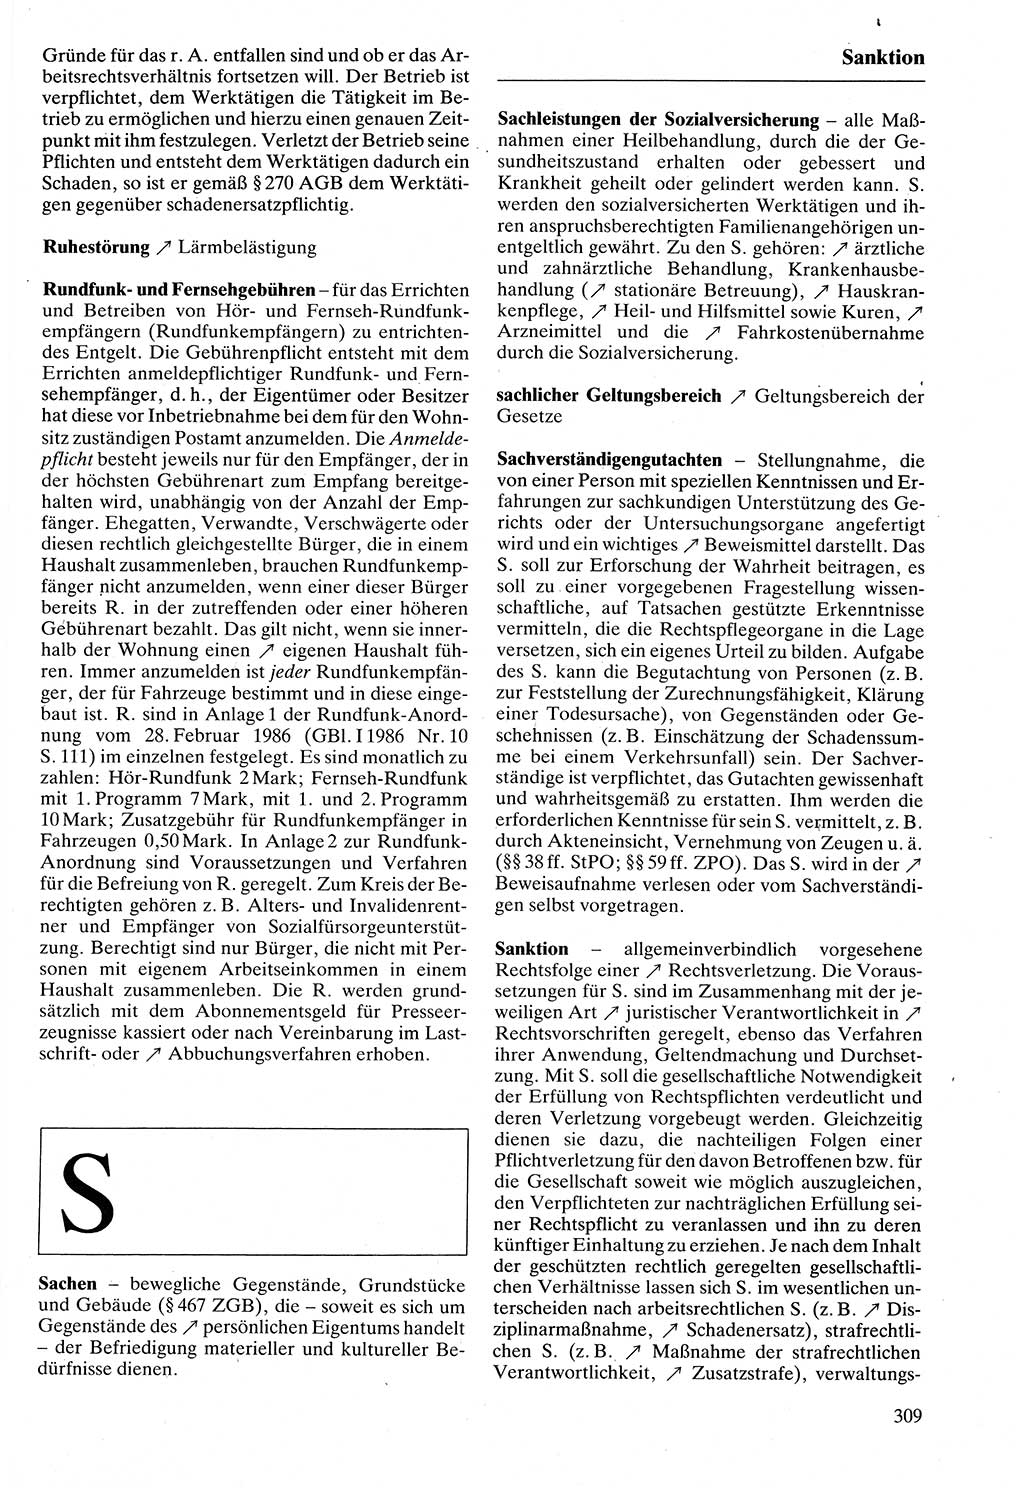 Rechtslexikon [Deutsche Demokratische Republik (DDR)] 1988, Seite 309 (Rechtslex. DDR 1988, S. 309)